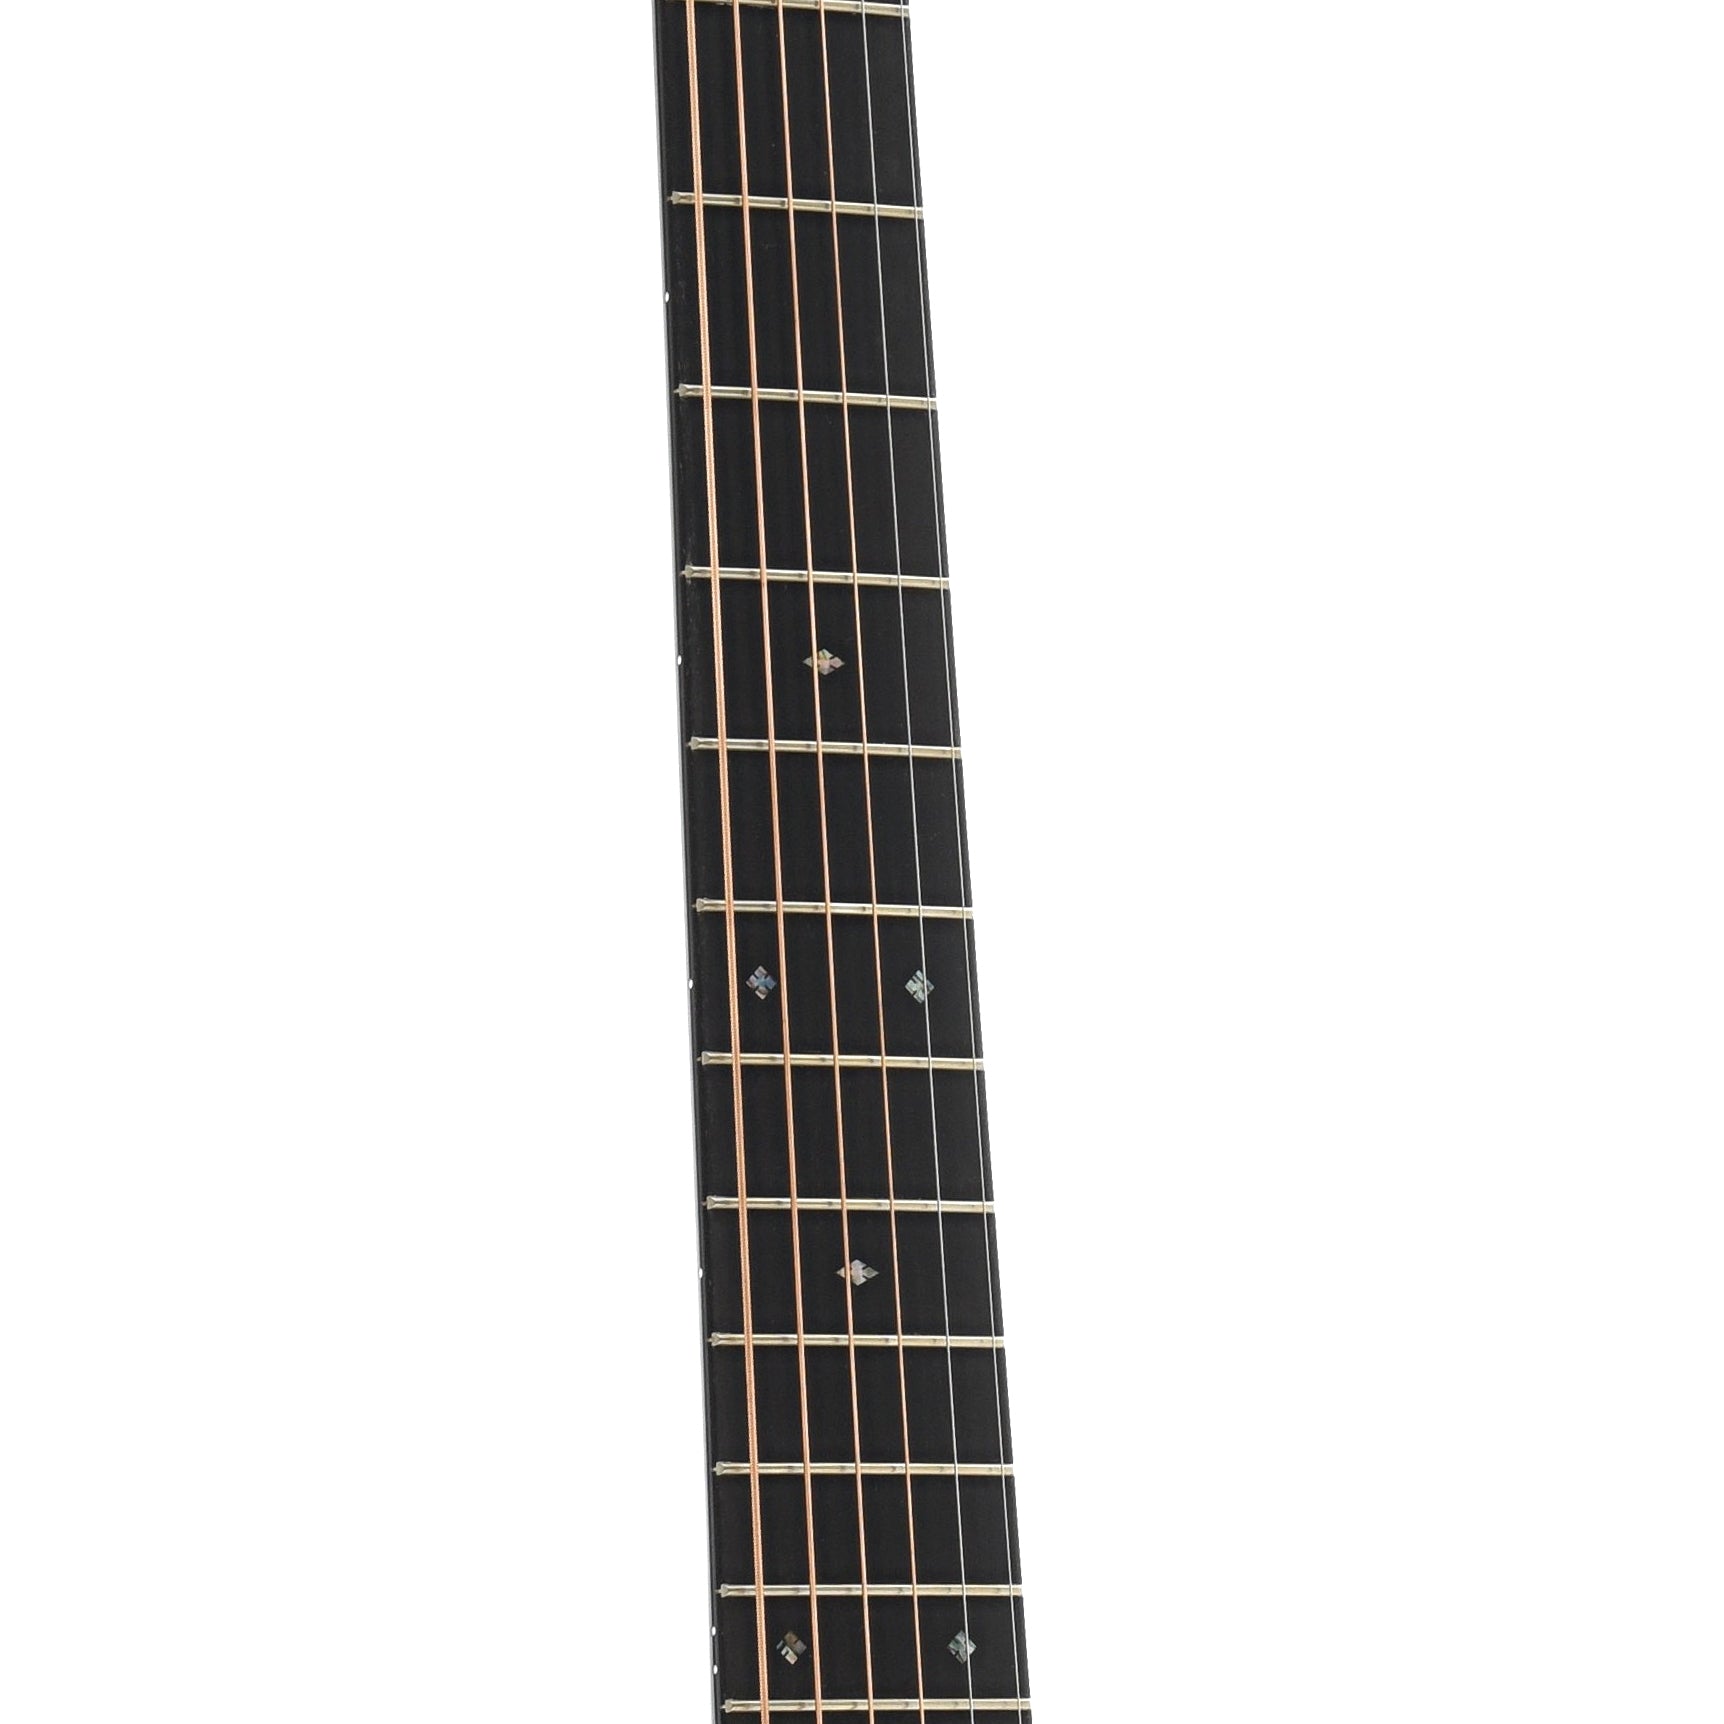 Fretboard of Martin 000-28EC Eric Clapton Guitar